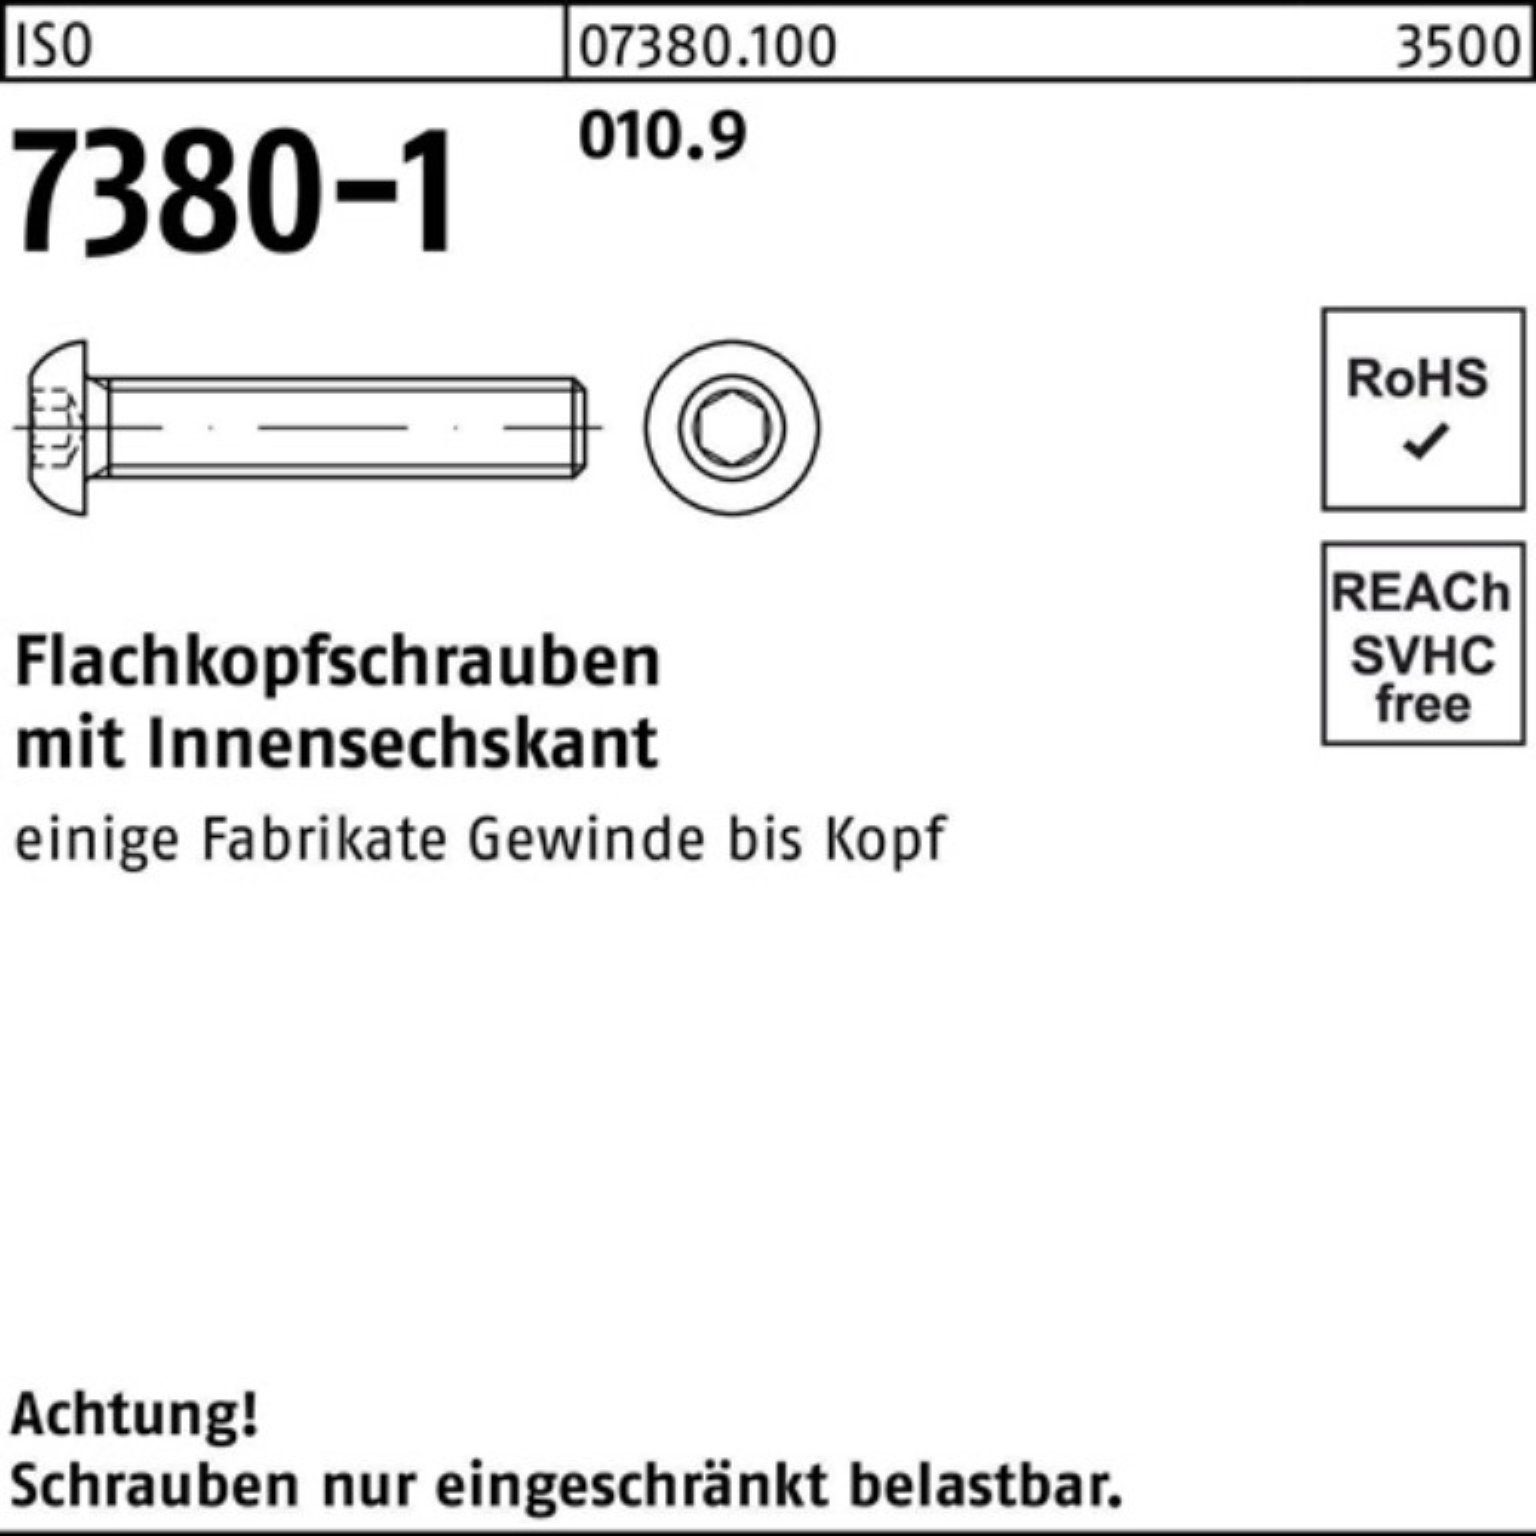 Reyher Schraube 500er Flachkopfschraube 500 18 St 7380-1 010.9 M6x Innen-6kt Pack ISO